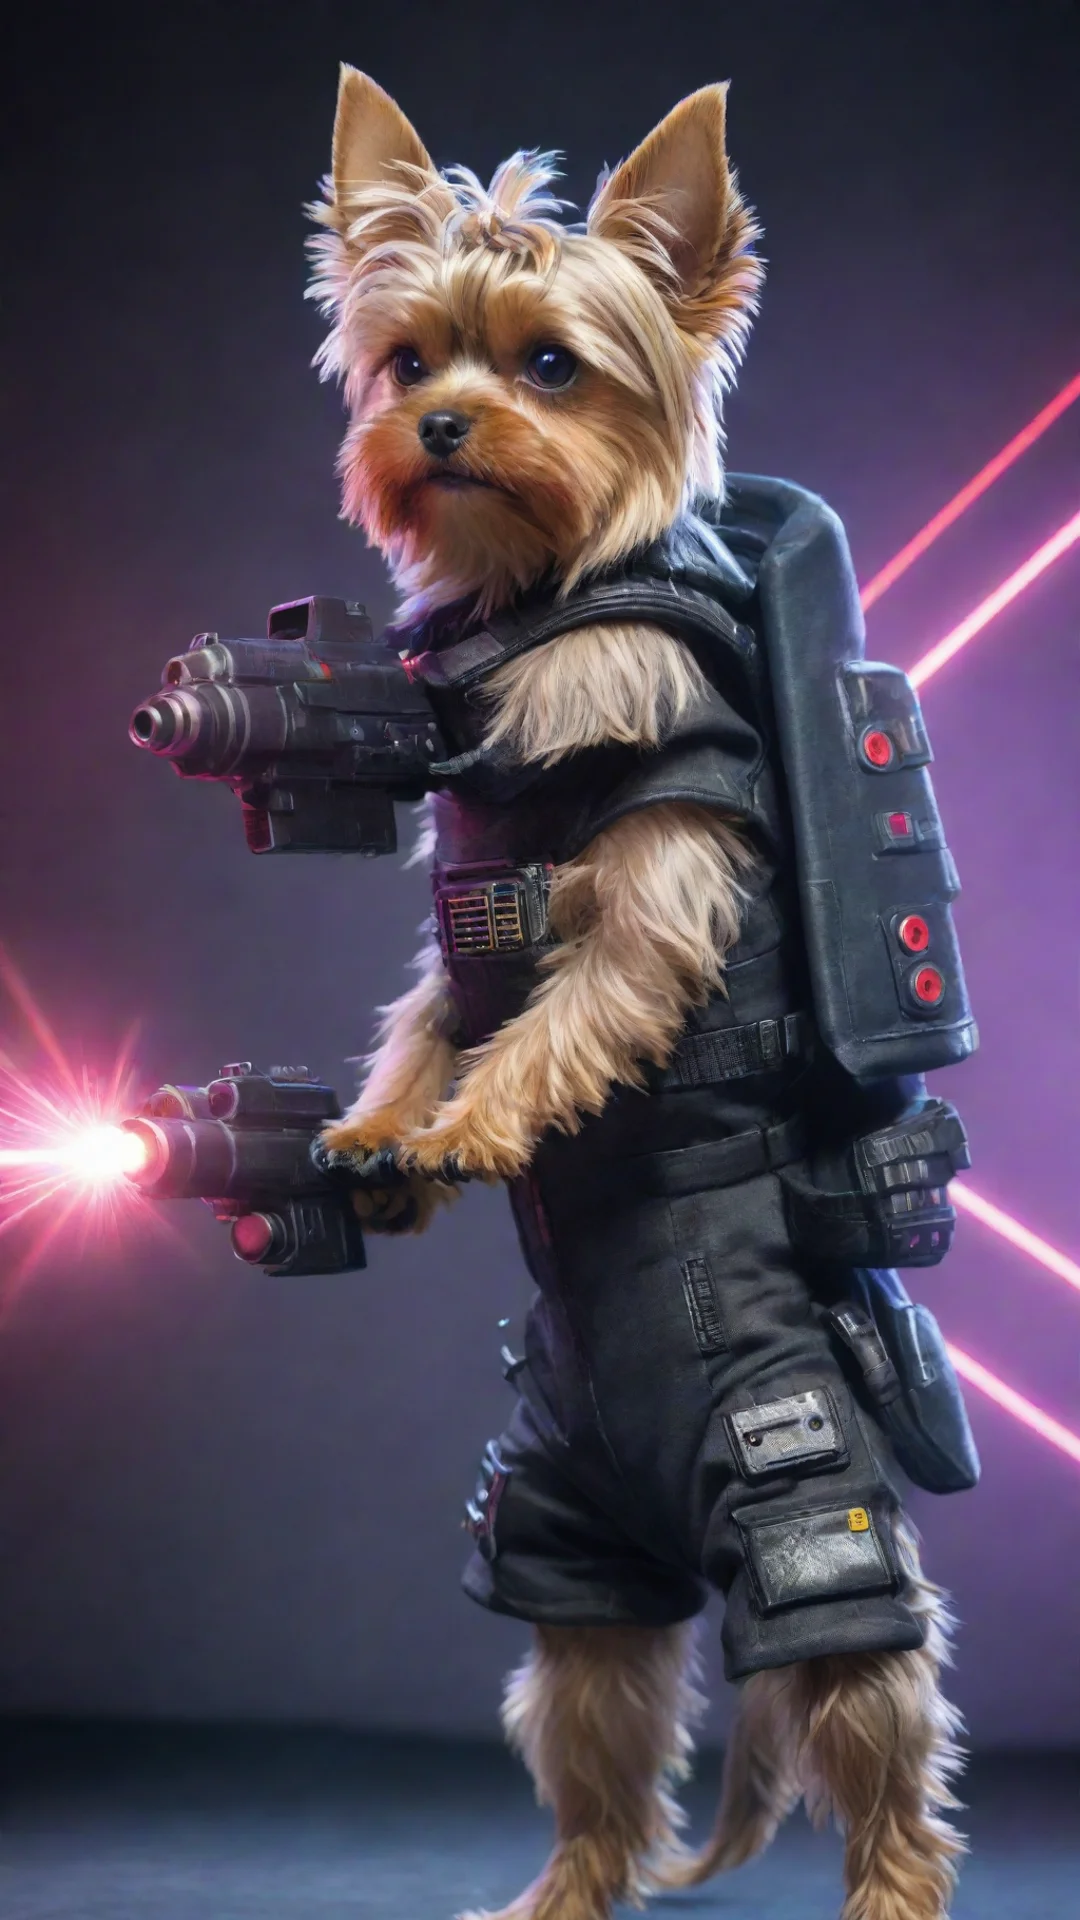 aiyorkshire terrier in a cyberpunk space suit firing a laser gun tall